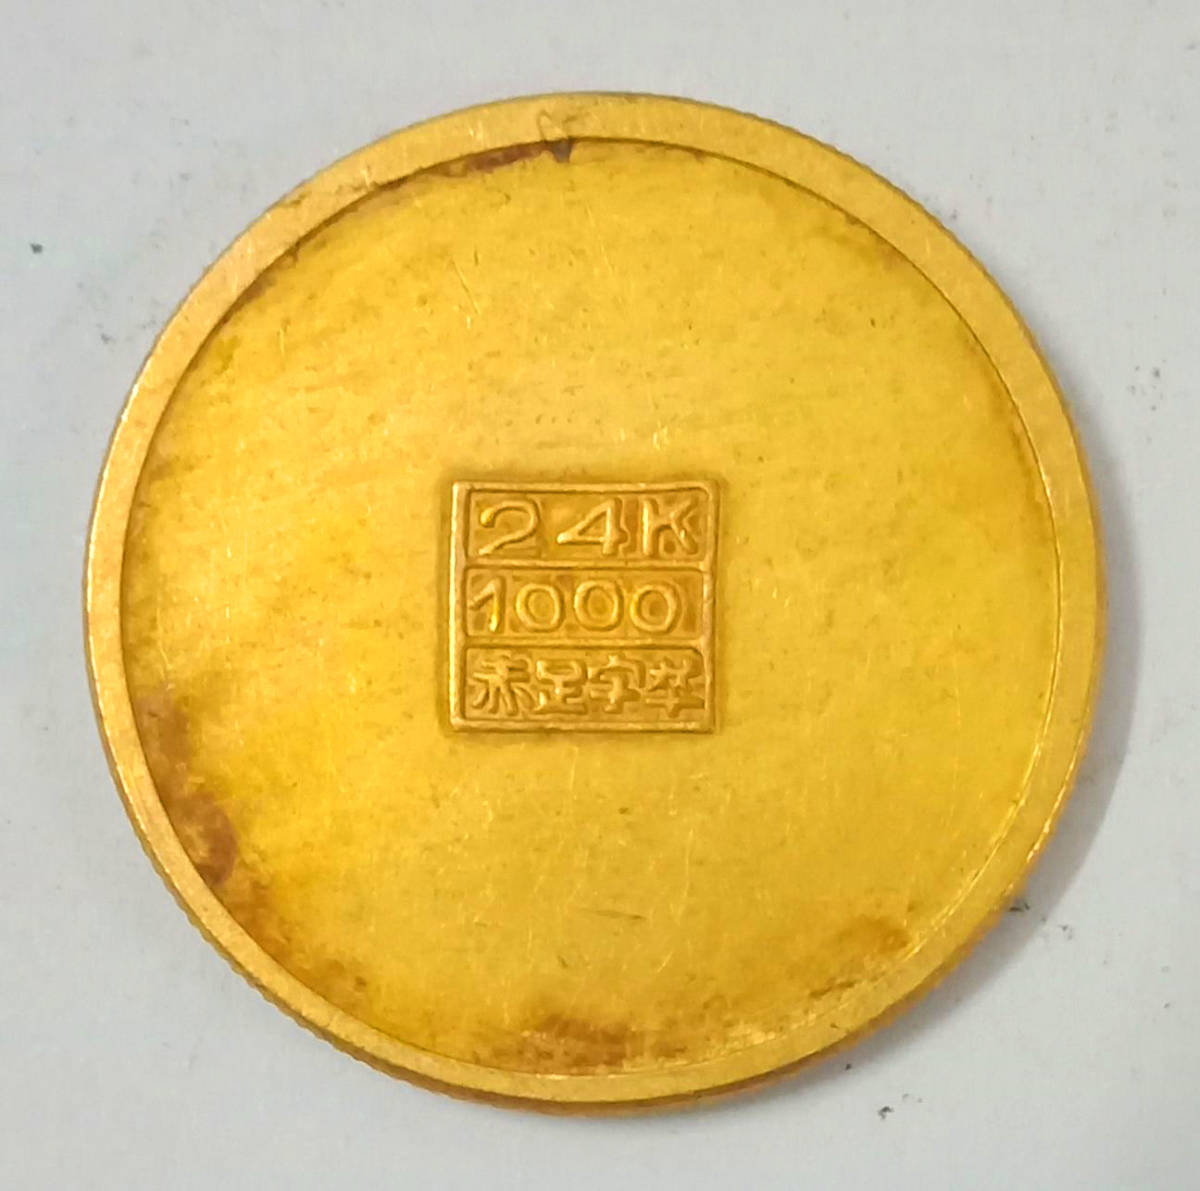  原文:満州国金貨 旧日本軍用金幣 富貴萬年 福 背24K 1000パーセント刻印有り 金貨 30.7mm 12.4g